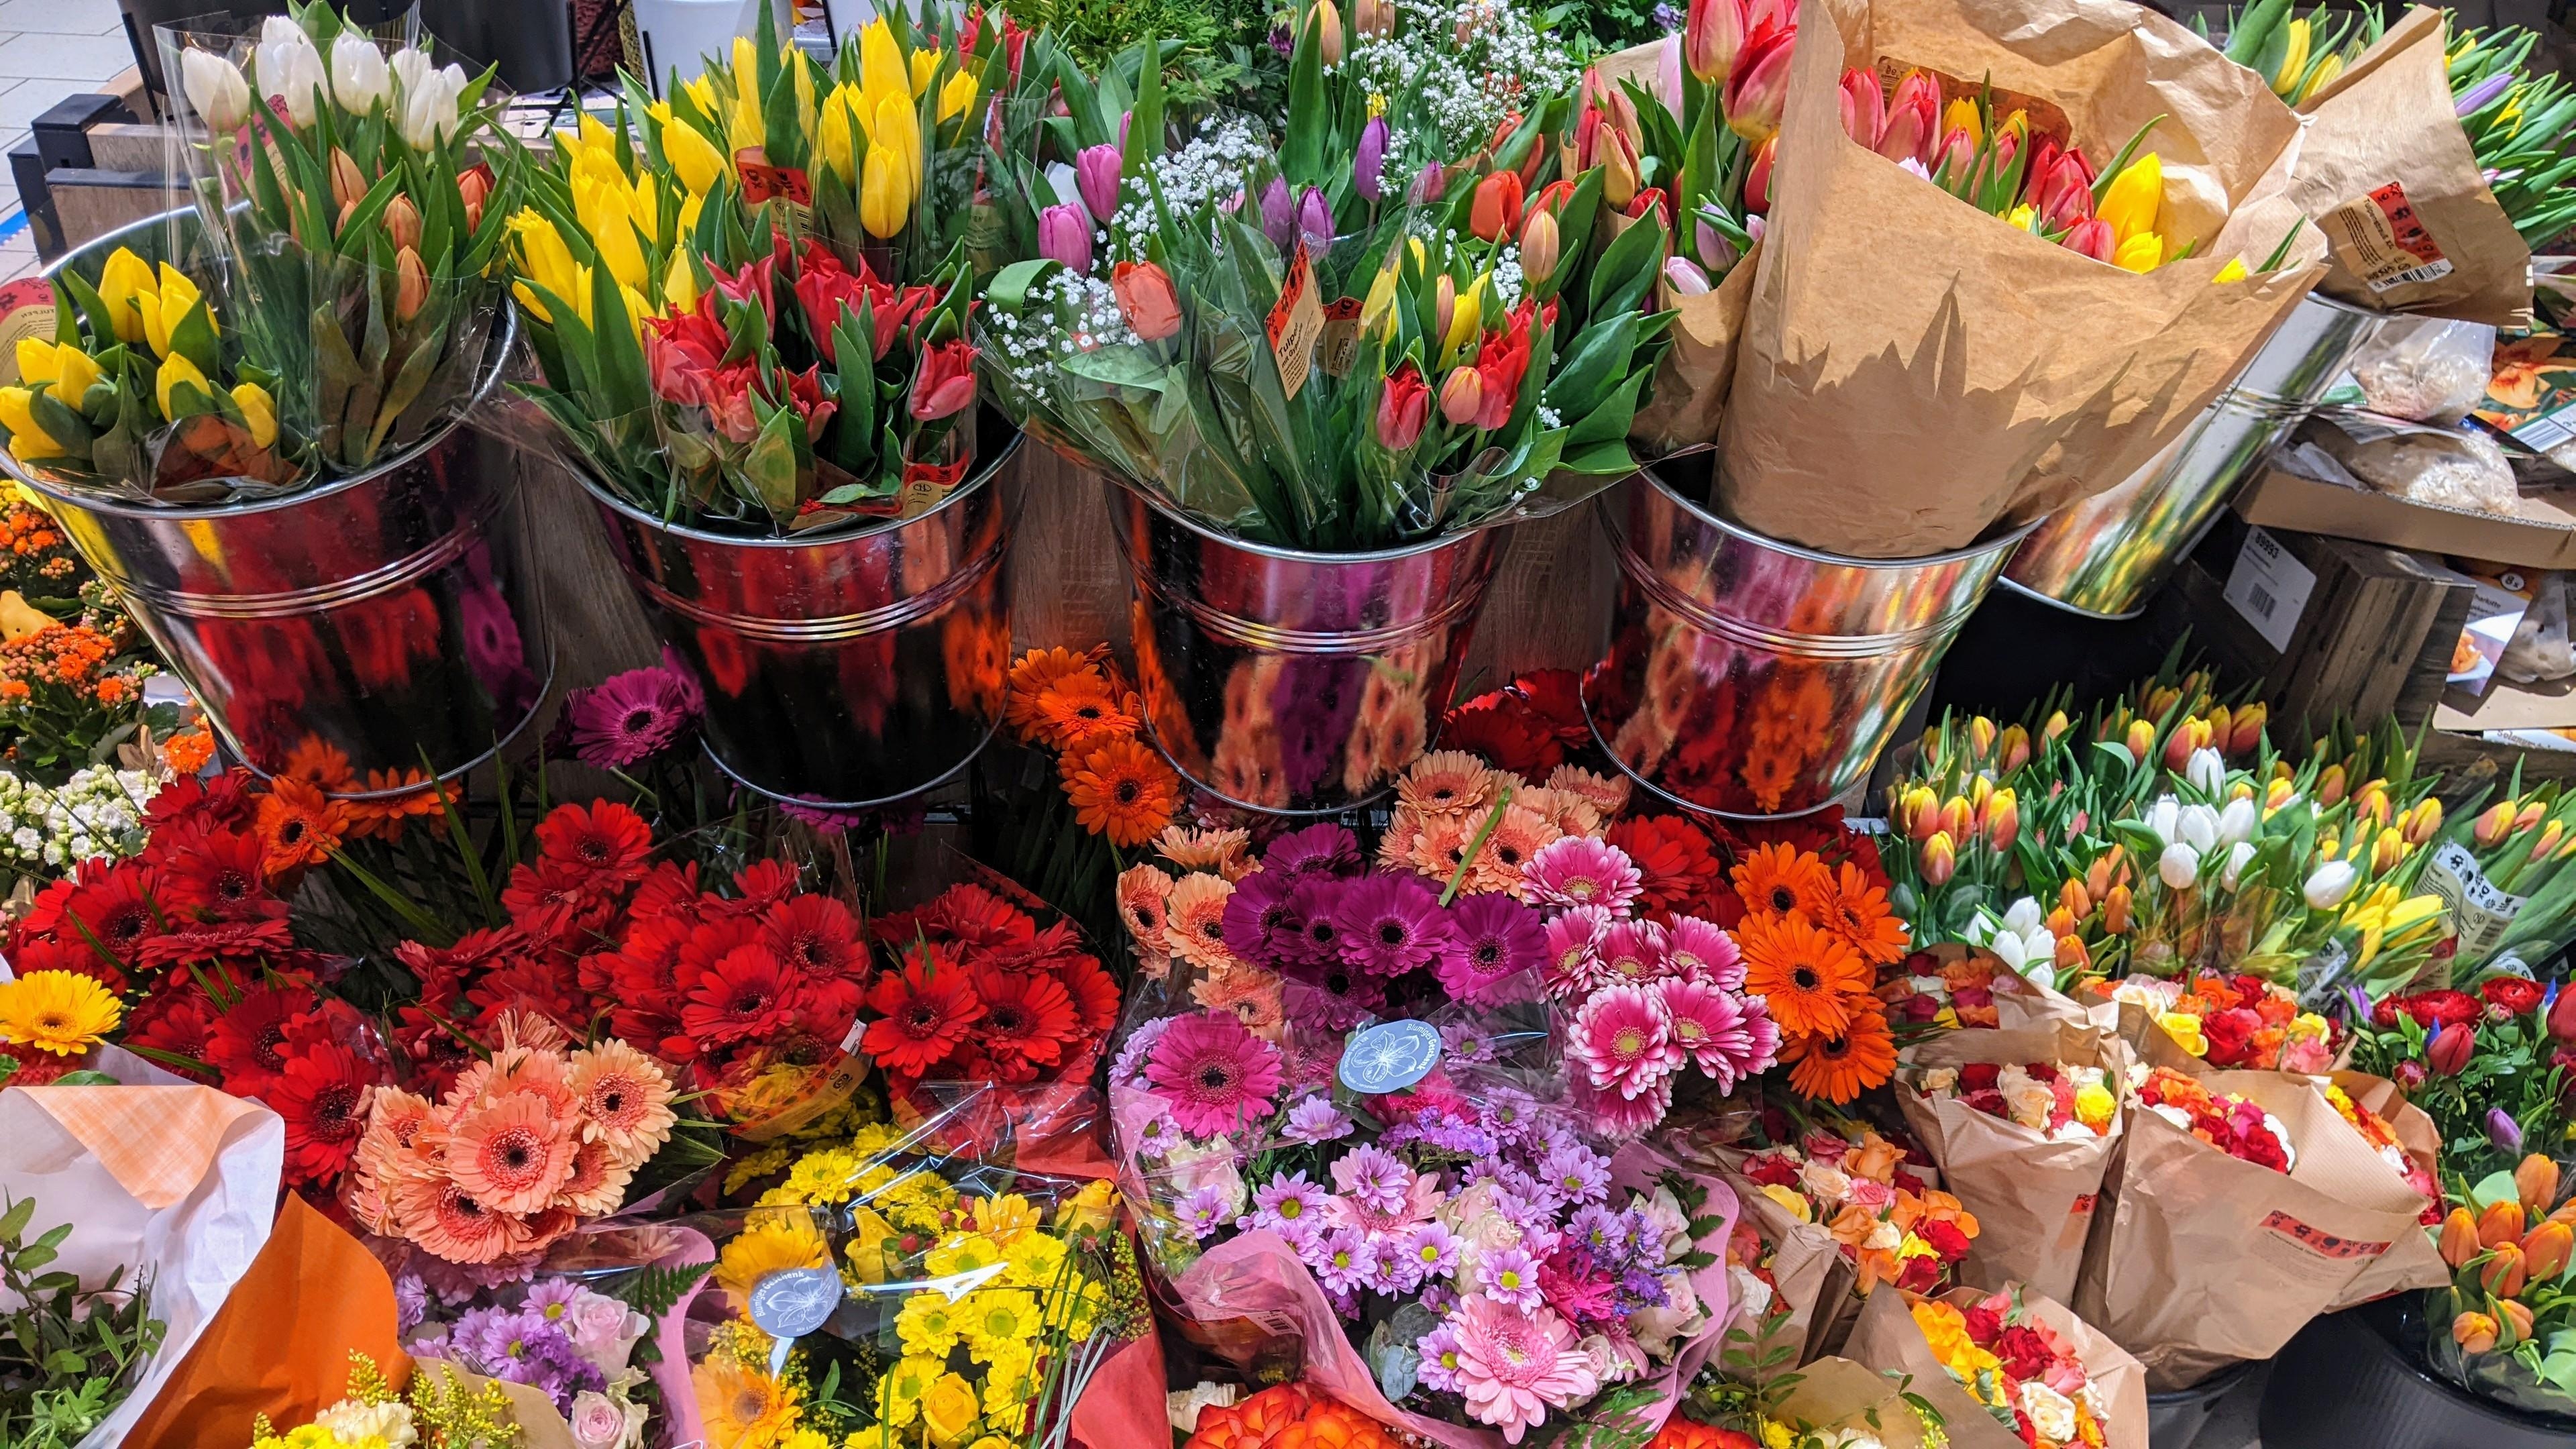 Bei so einem schönen Anblick geht man doch gerne in der Früh zum Einkaufen :)

#freshflowers